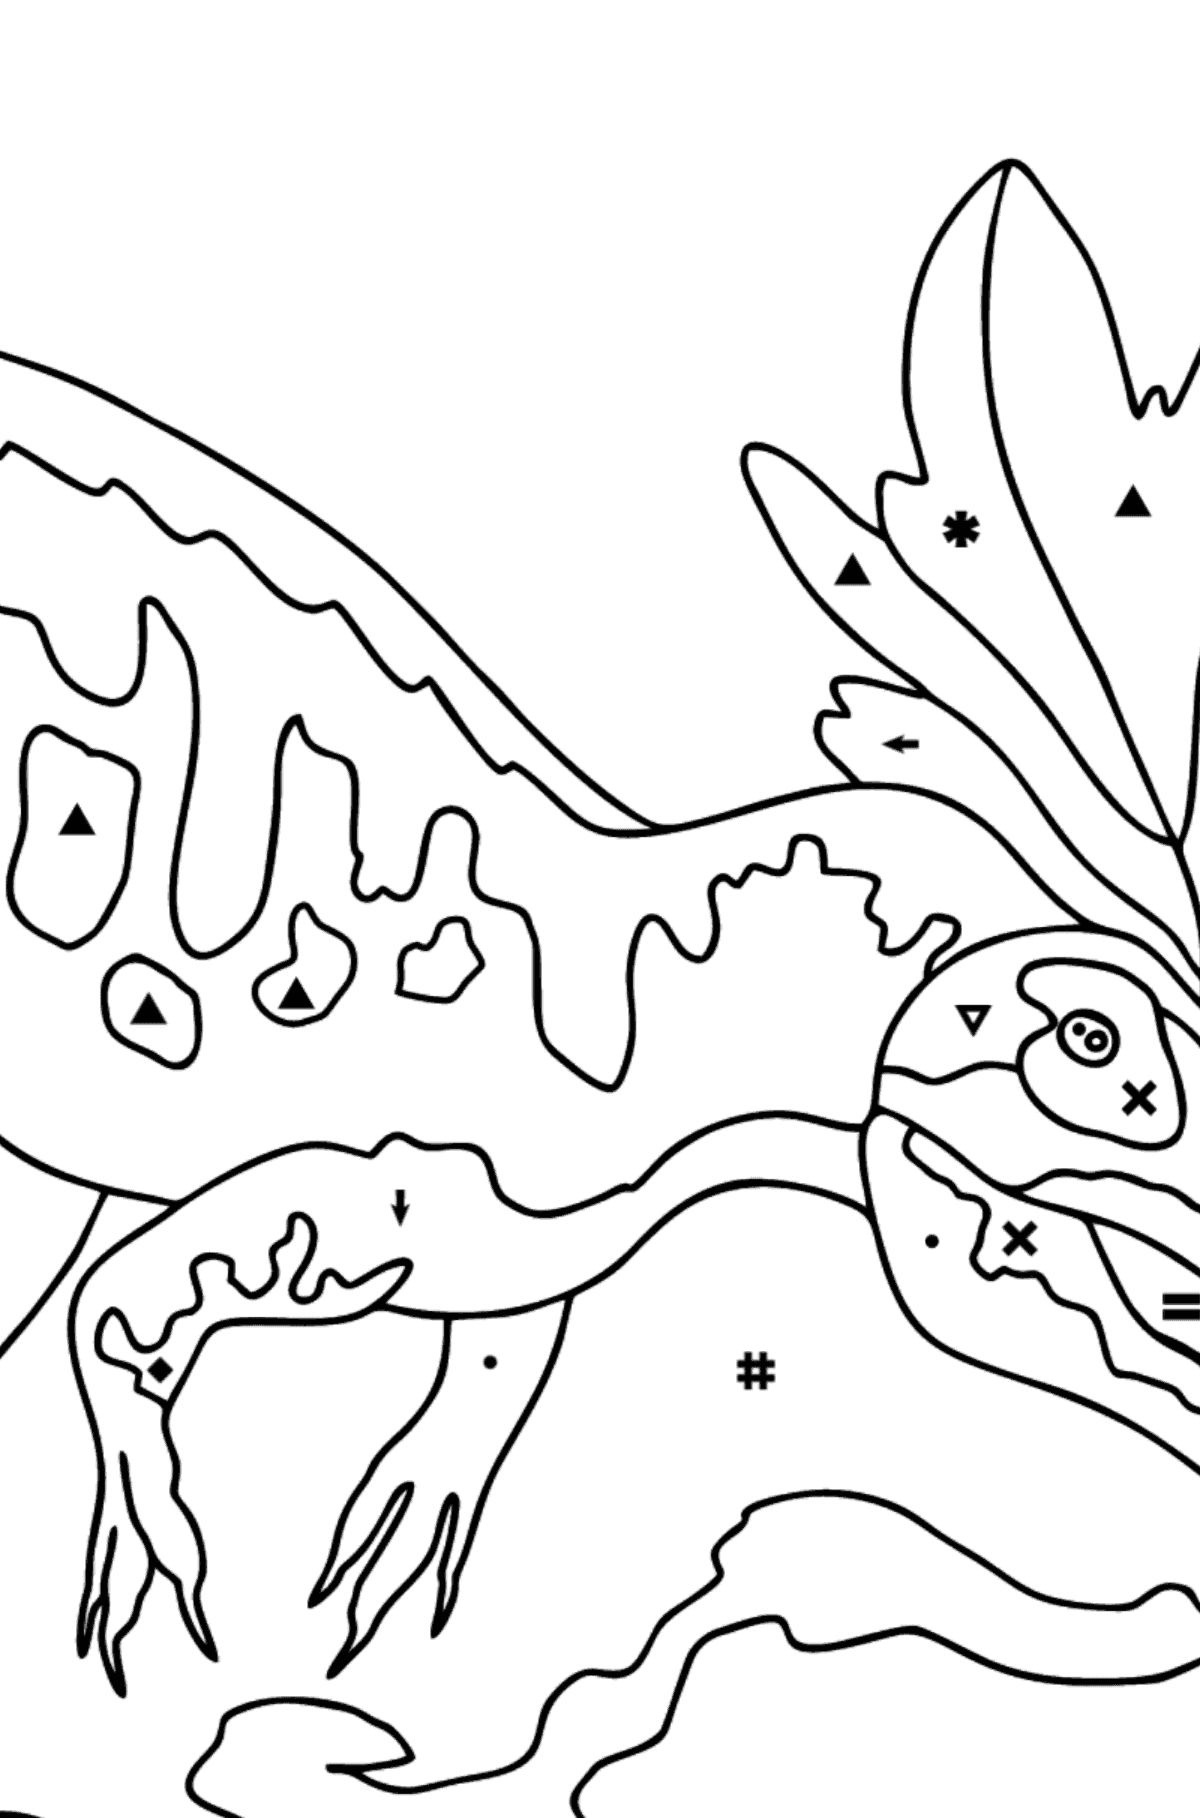 Målarbild allosaurus (svår) - Färgläggning efter symboler För barn